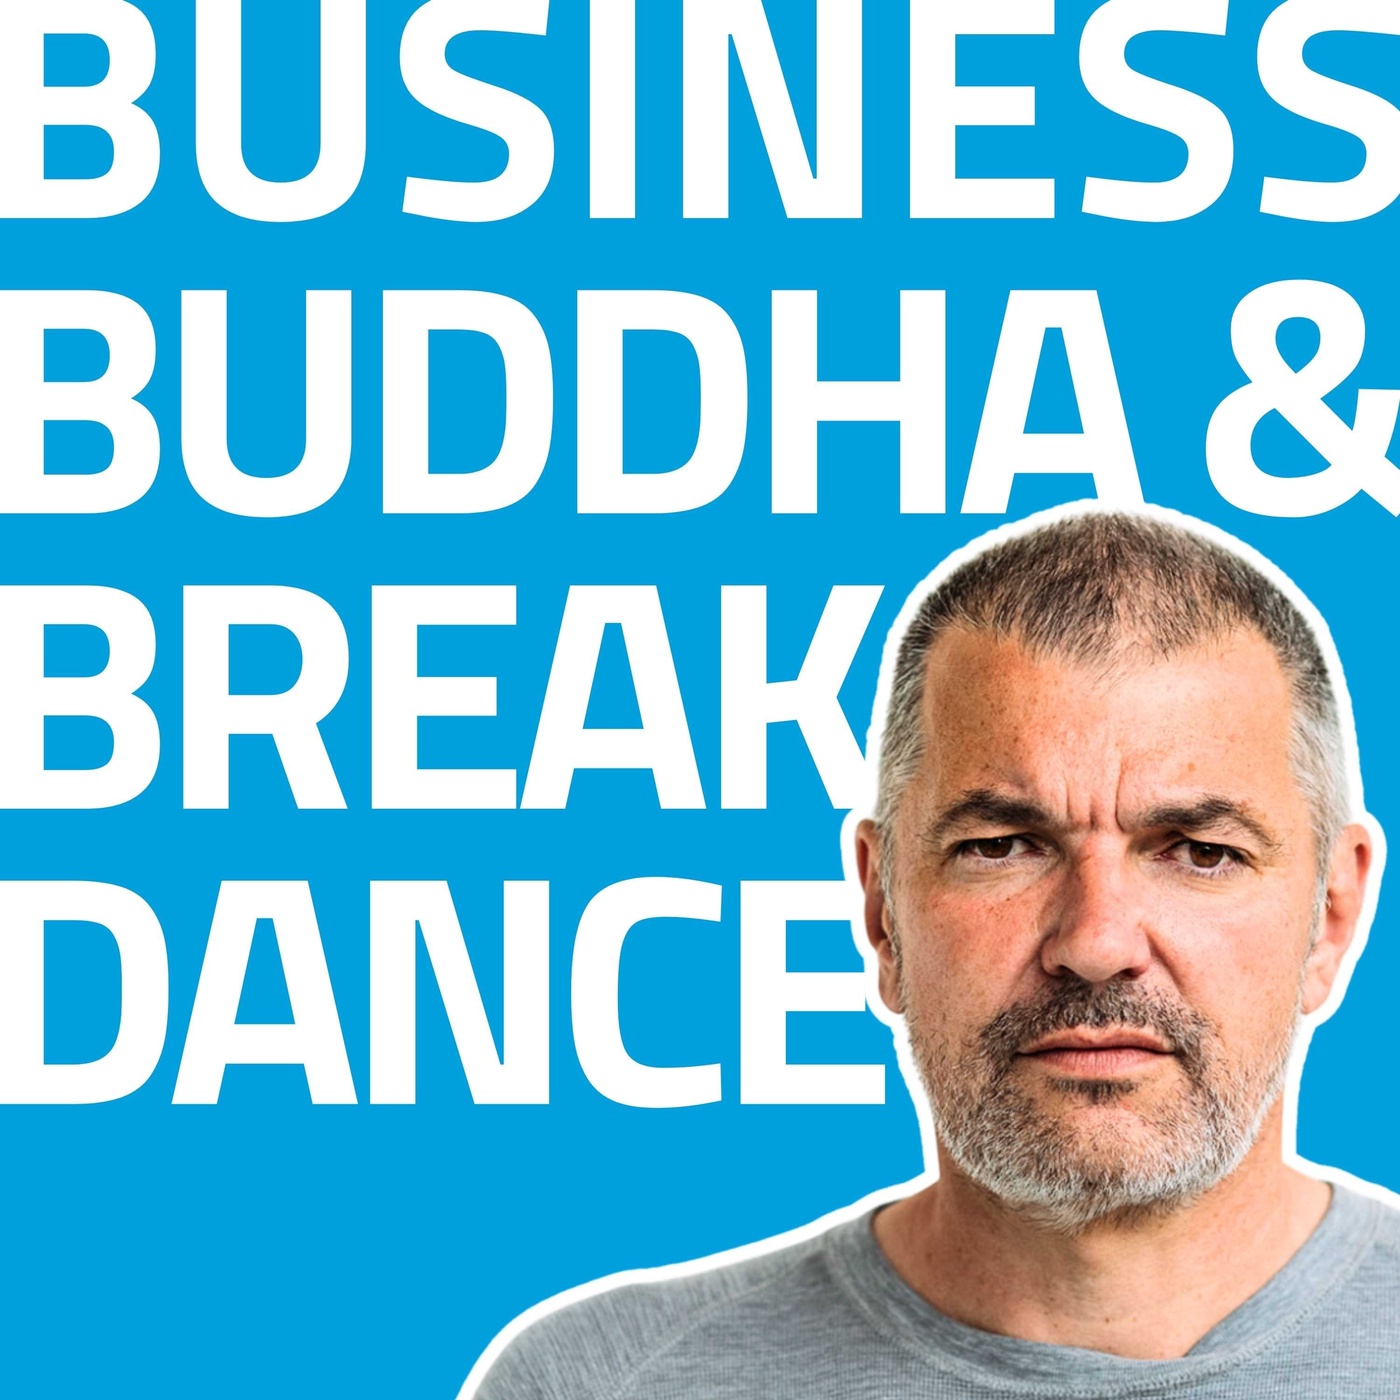 Business, Buddha & Breakdance - Für Unternehmer, Selbstständige und alle anderen Leader.